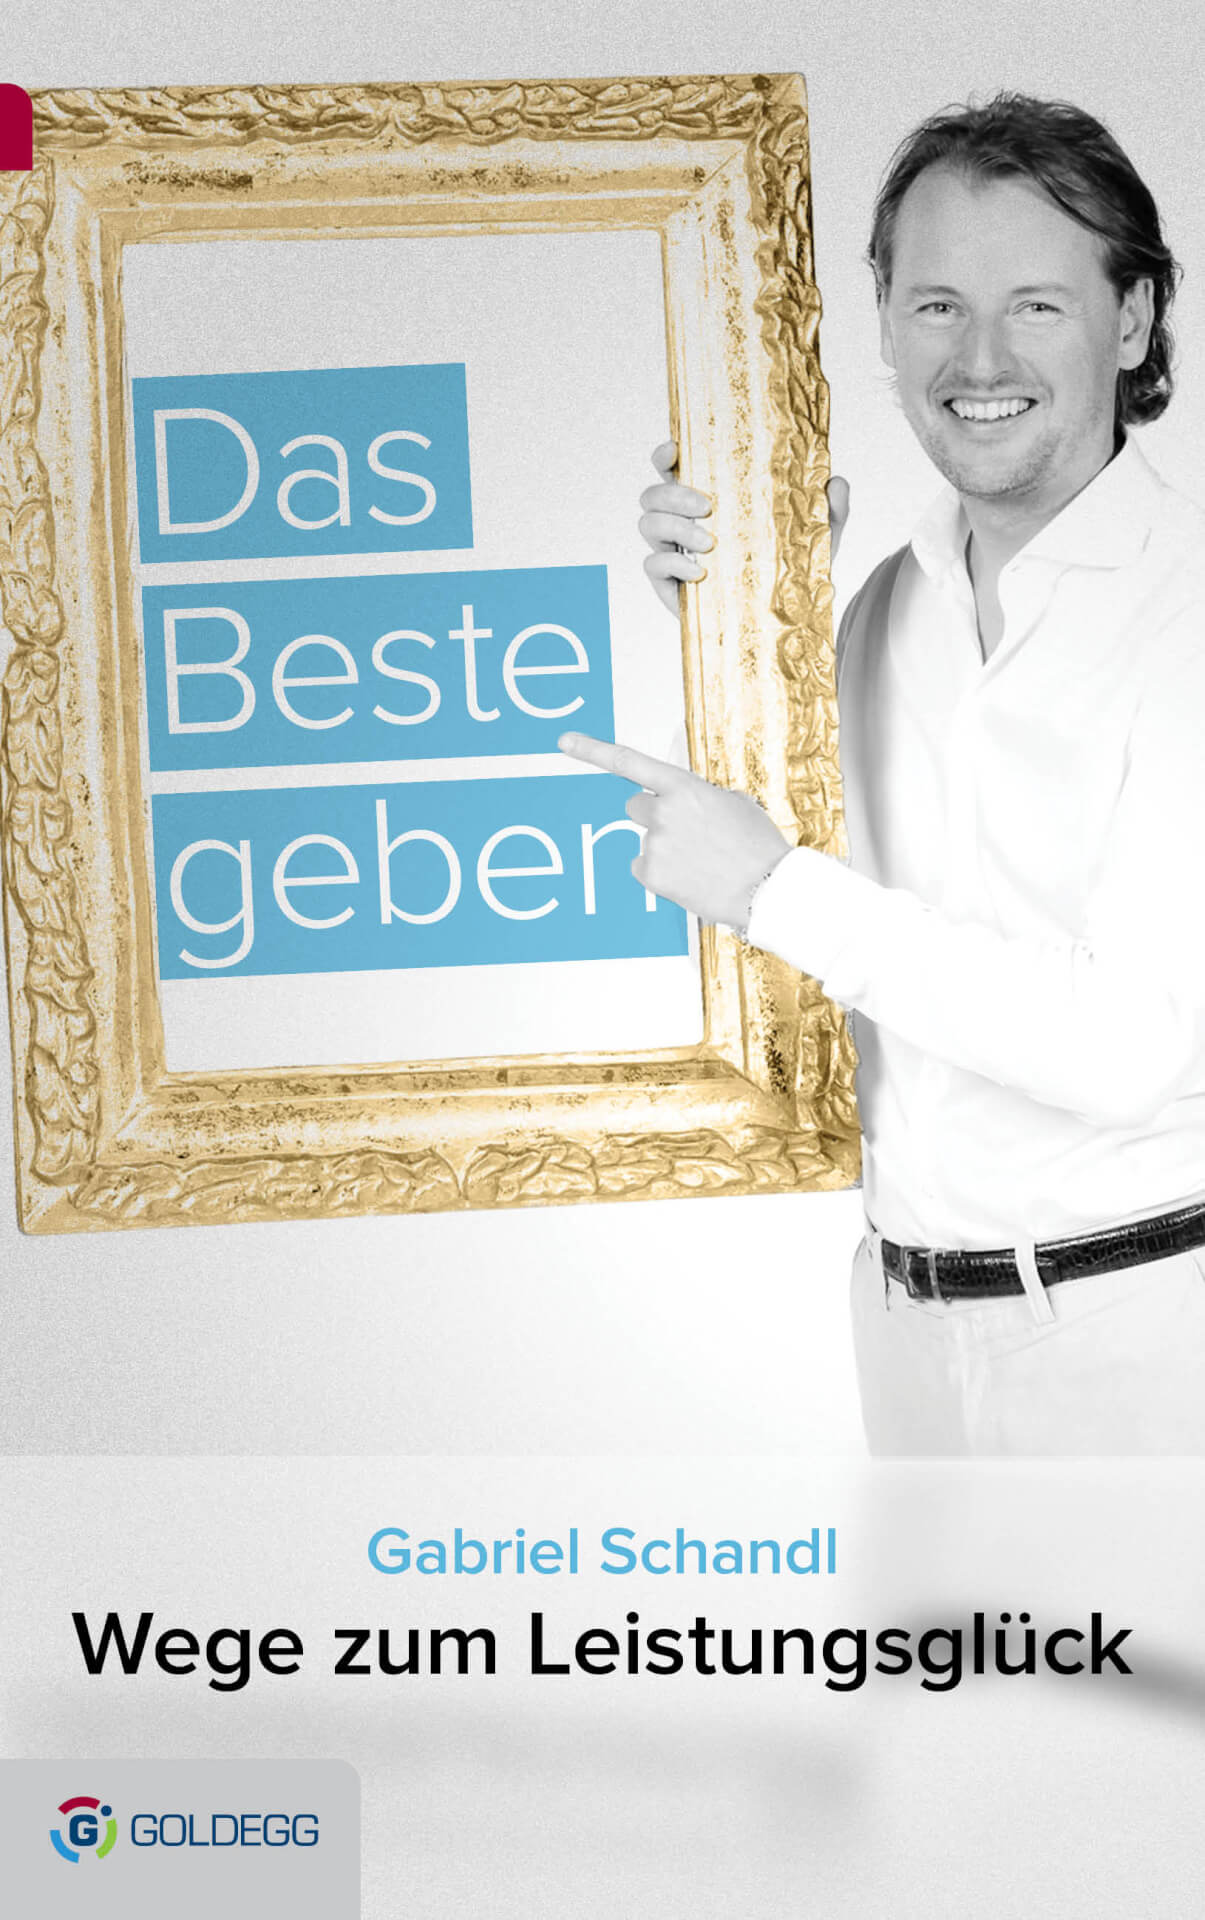 Mann im weißen Hemd hält einen goldenen Rahmen mit den Worten "das beste geben" darin, Buchcover für "Wege zum Leistungsglück" von Gabriel Schandl, mit seinem Stim